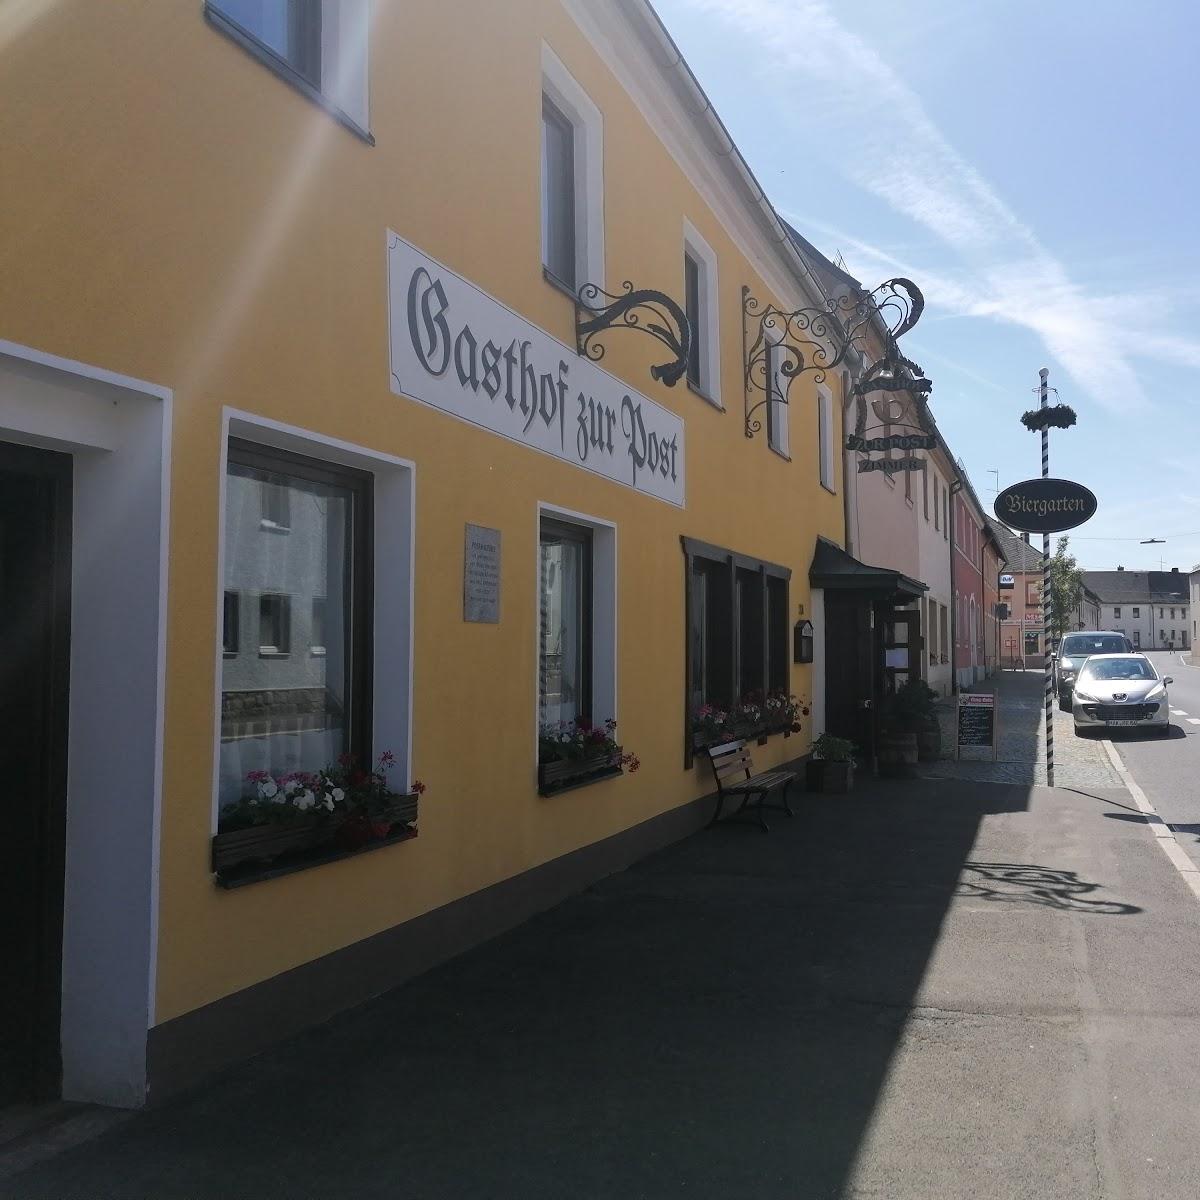 Restaurant "Zur Post" in  Thiersheim